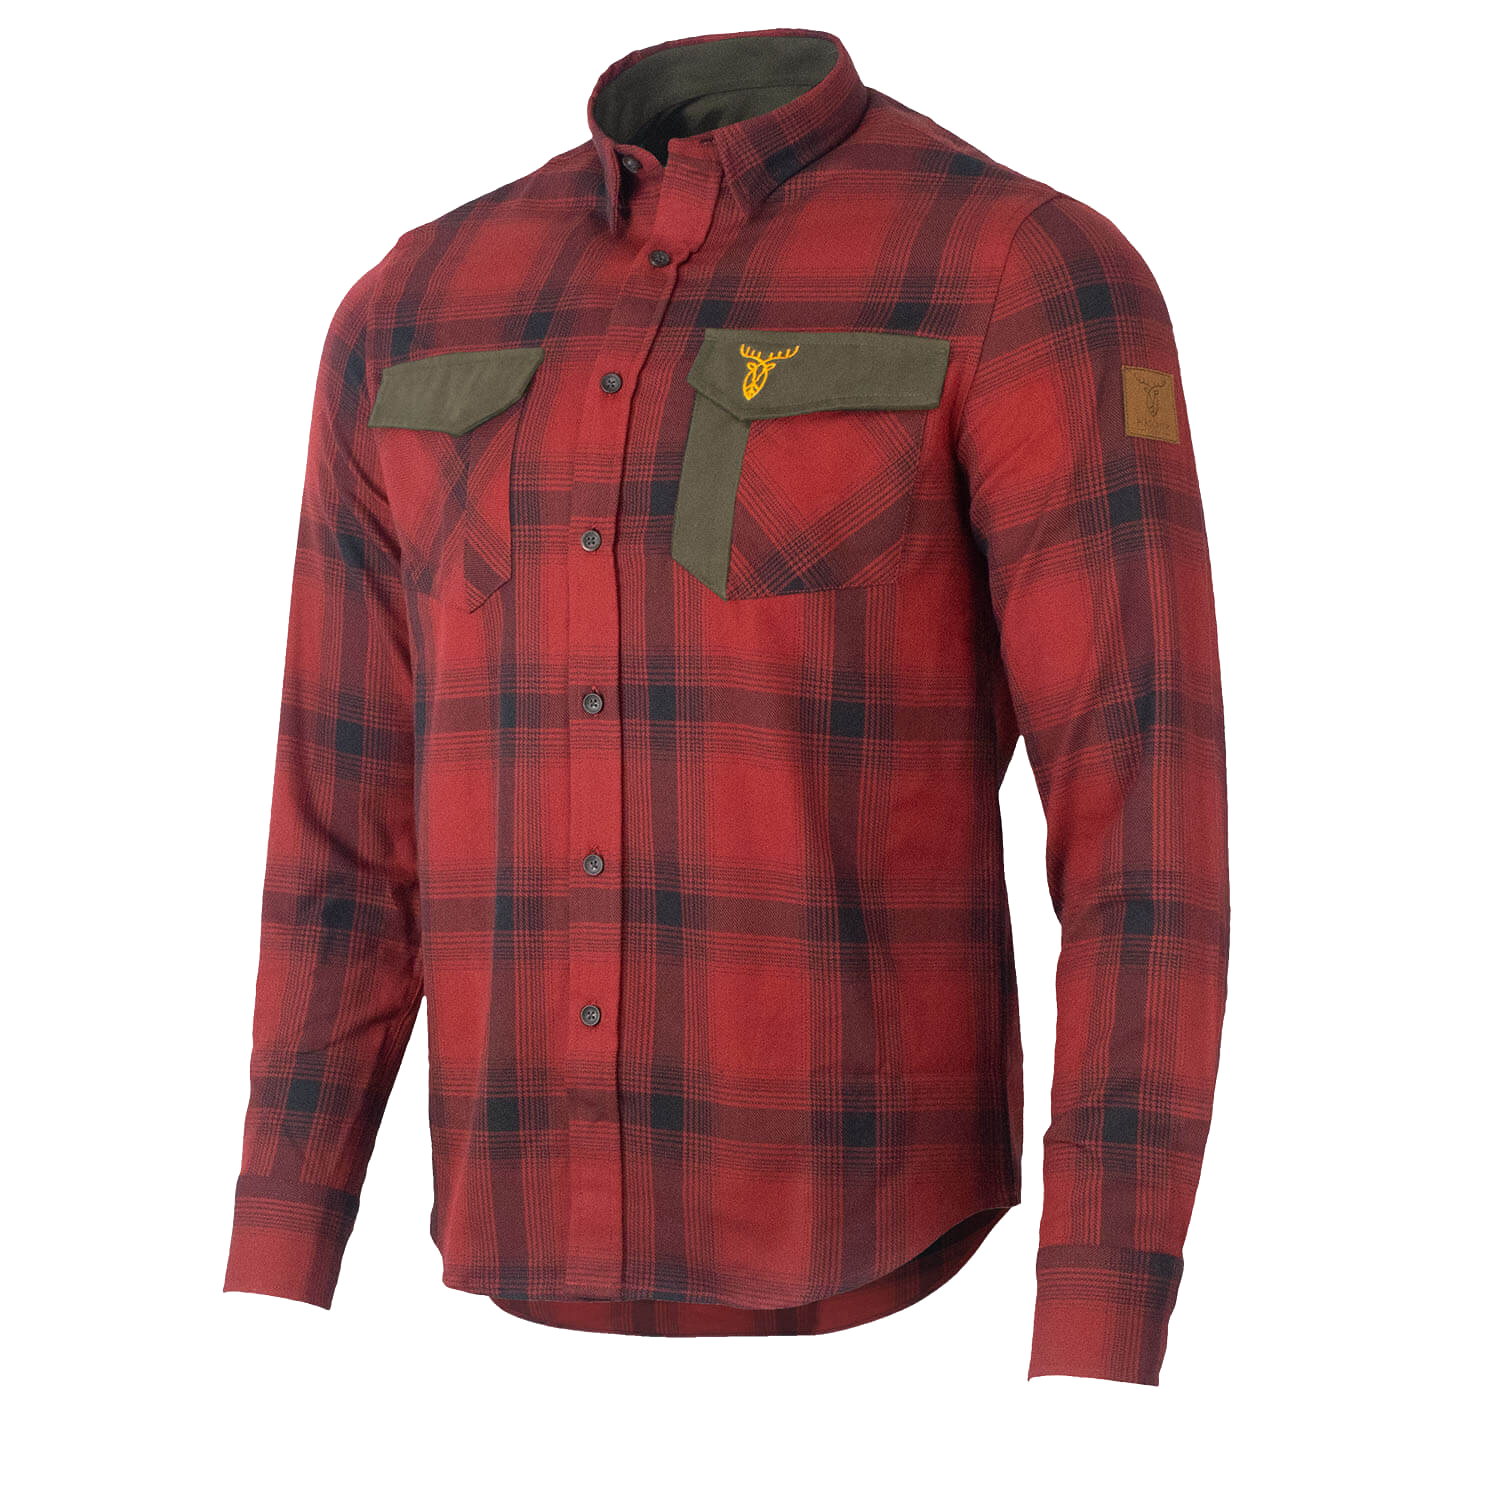  Pirscher Gear Bos overhemd (Vuurrood) - Overhemden